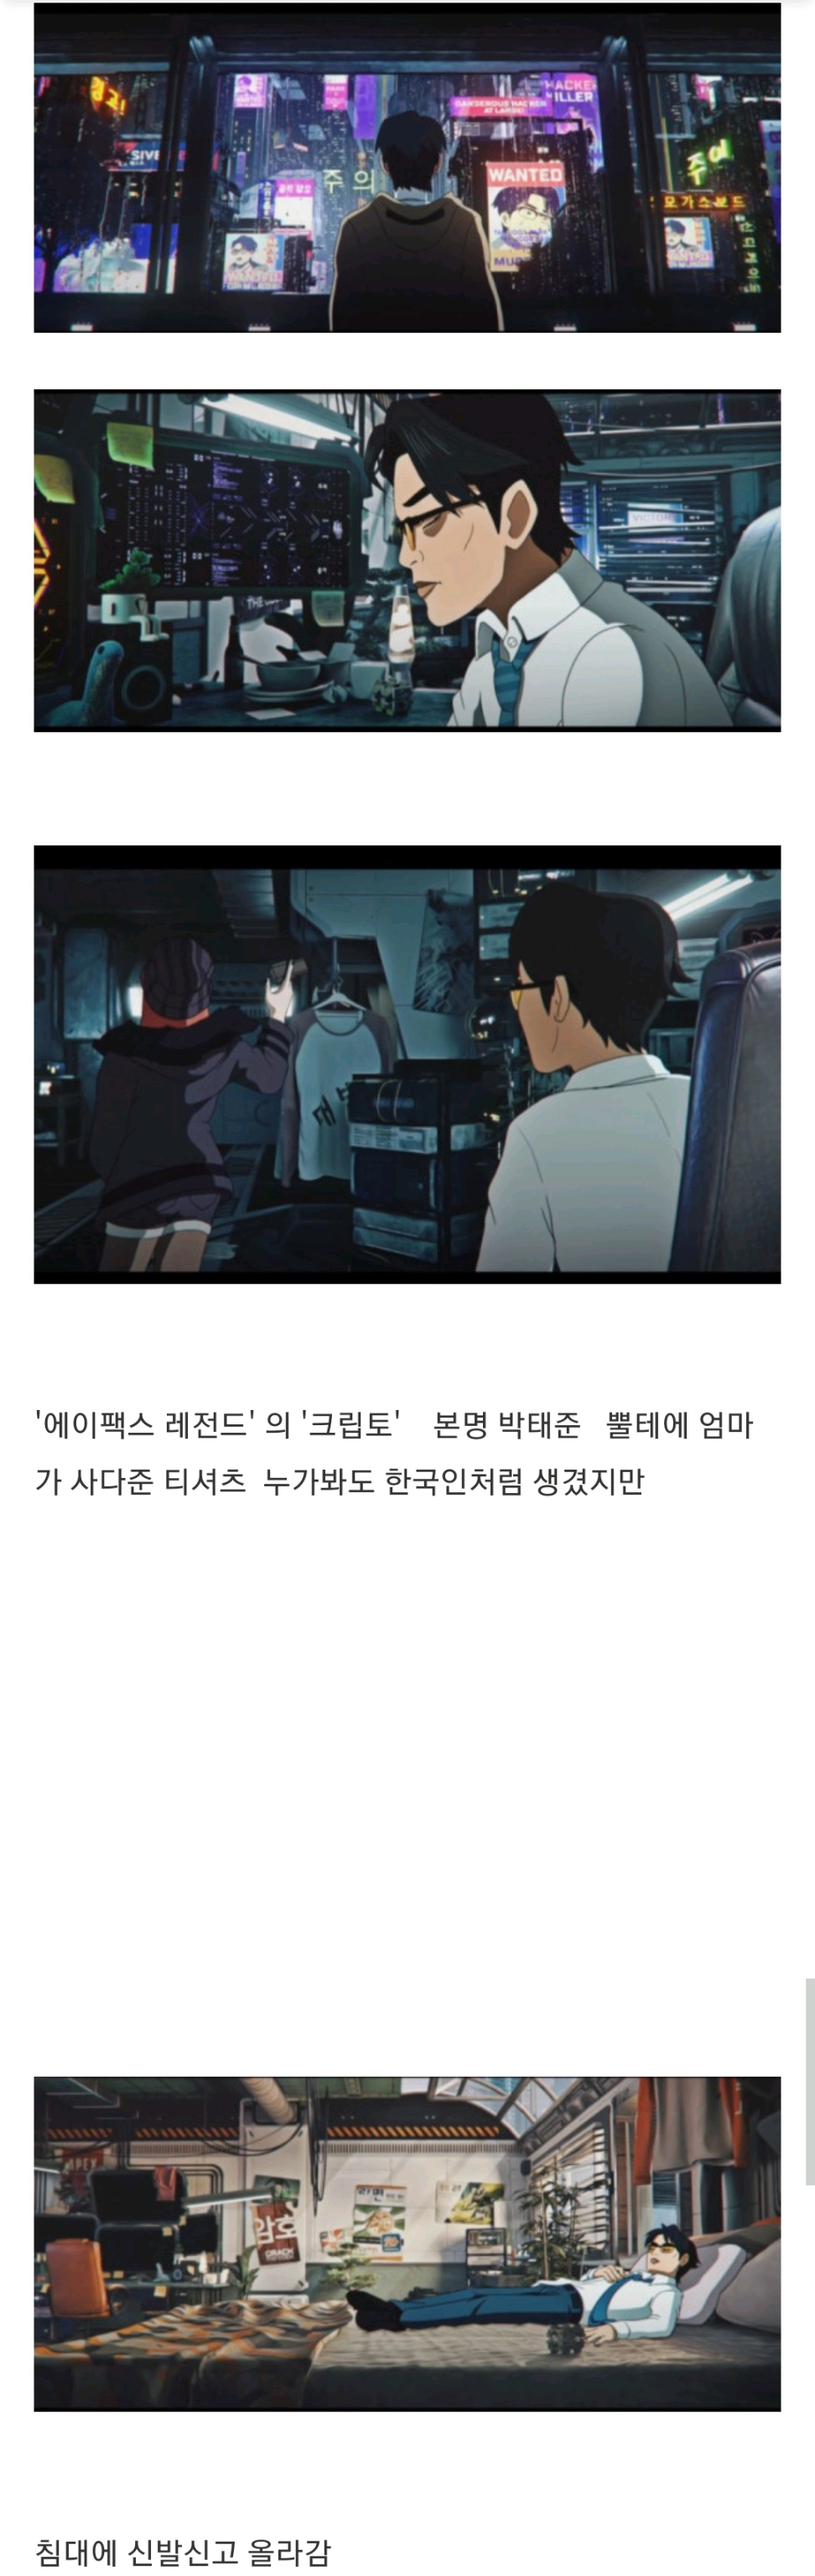 게임속 한국인 캐릭터 중 진짜 광기